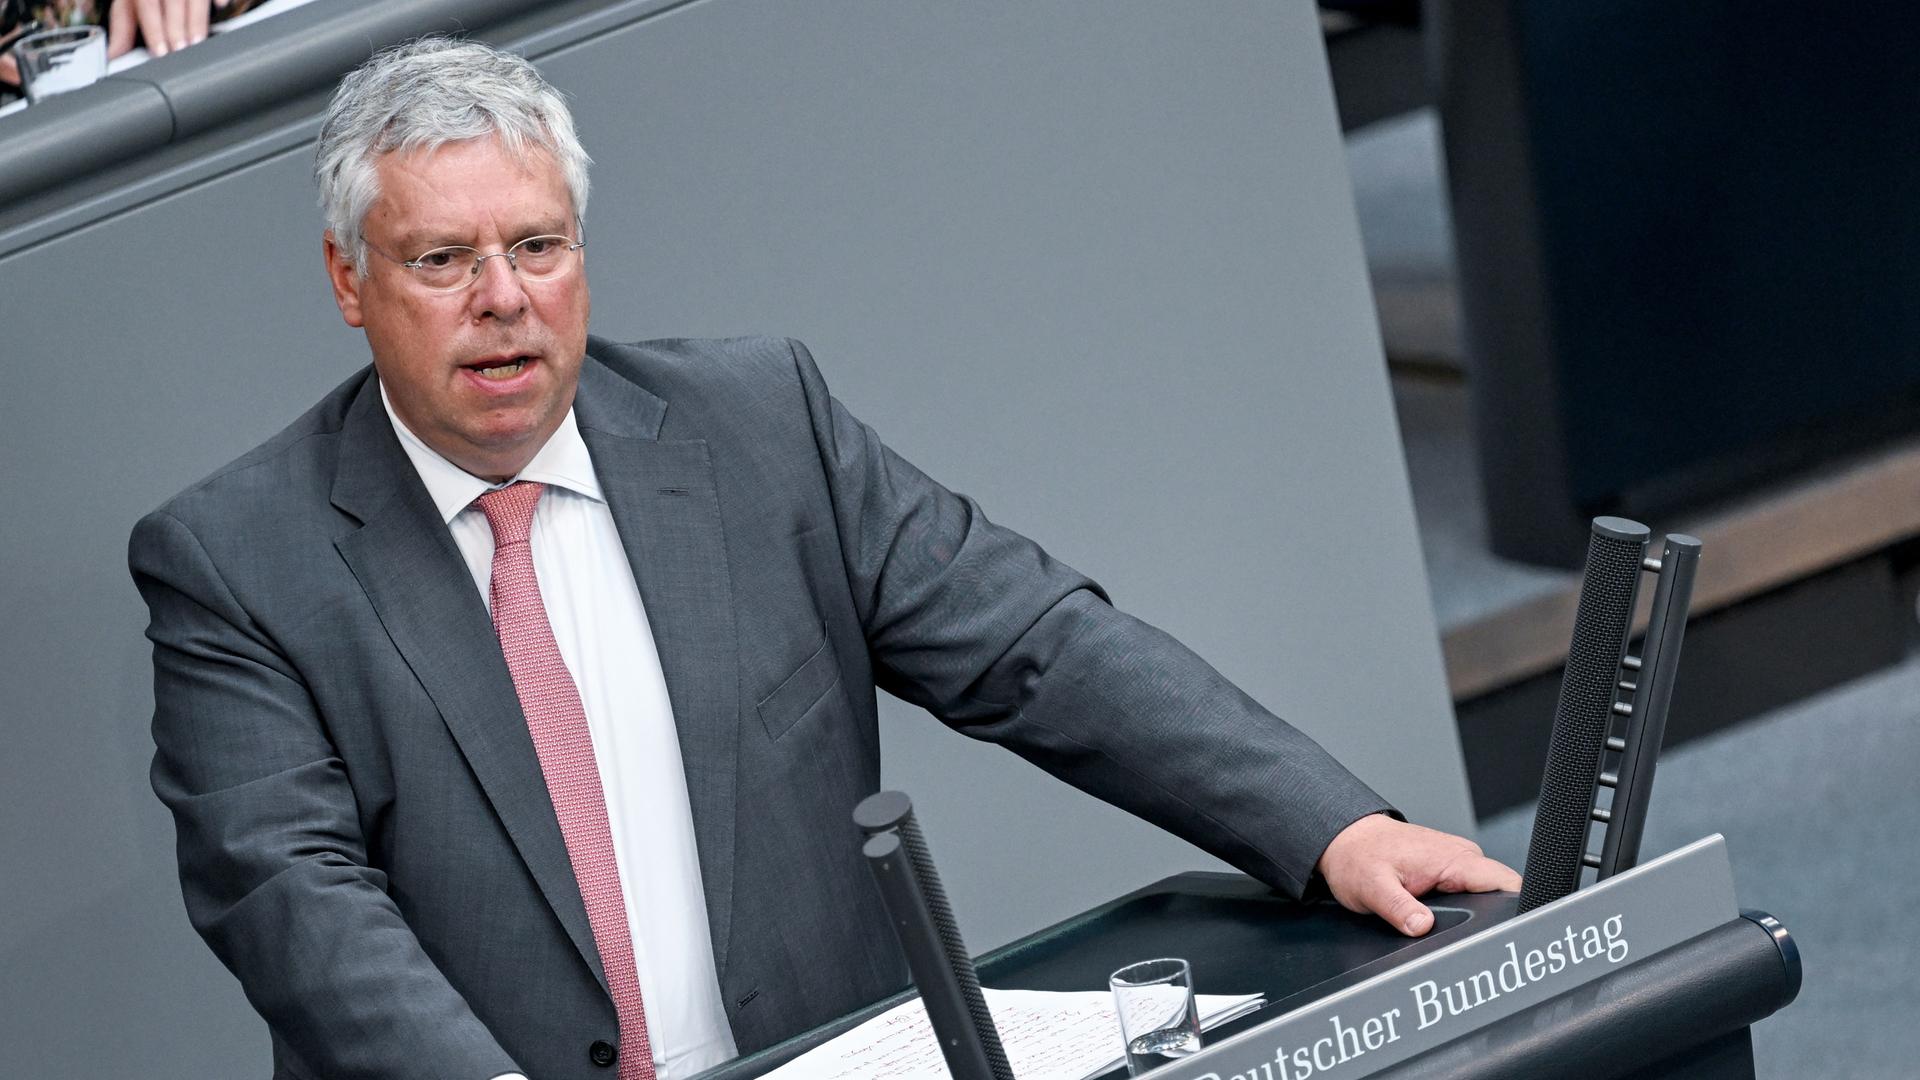 Hardt im grauen Jackett mit roter Krawatte und weißem Hemd am Rednerpult des Bundestags.